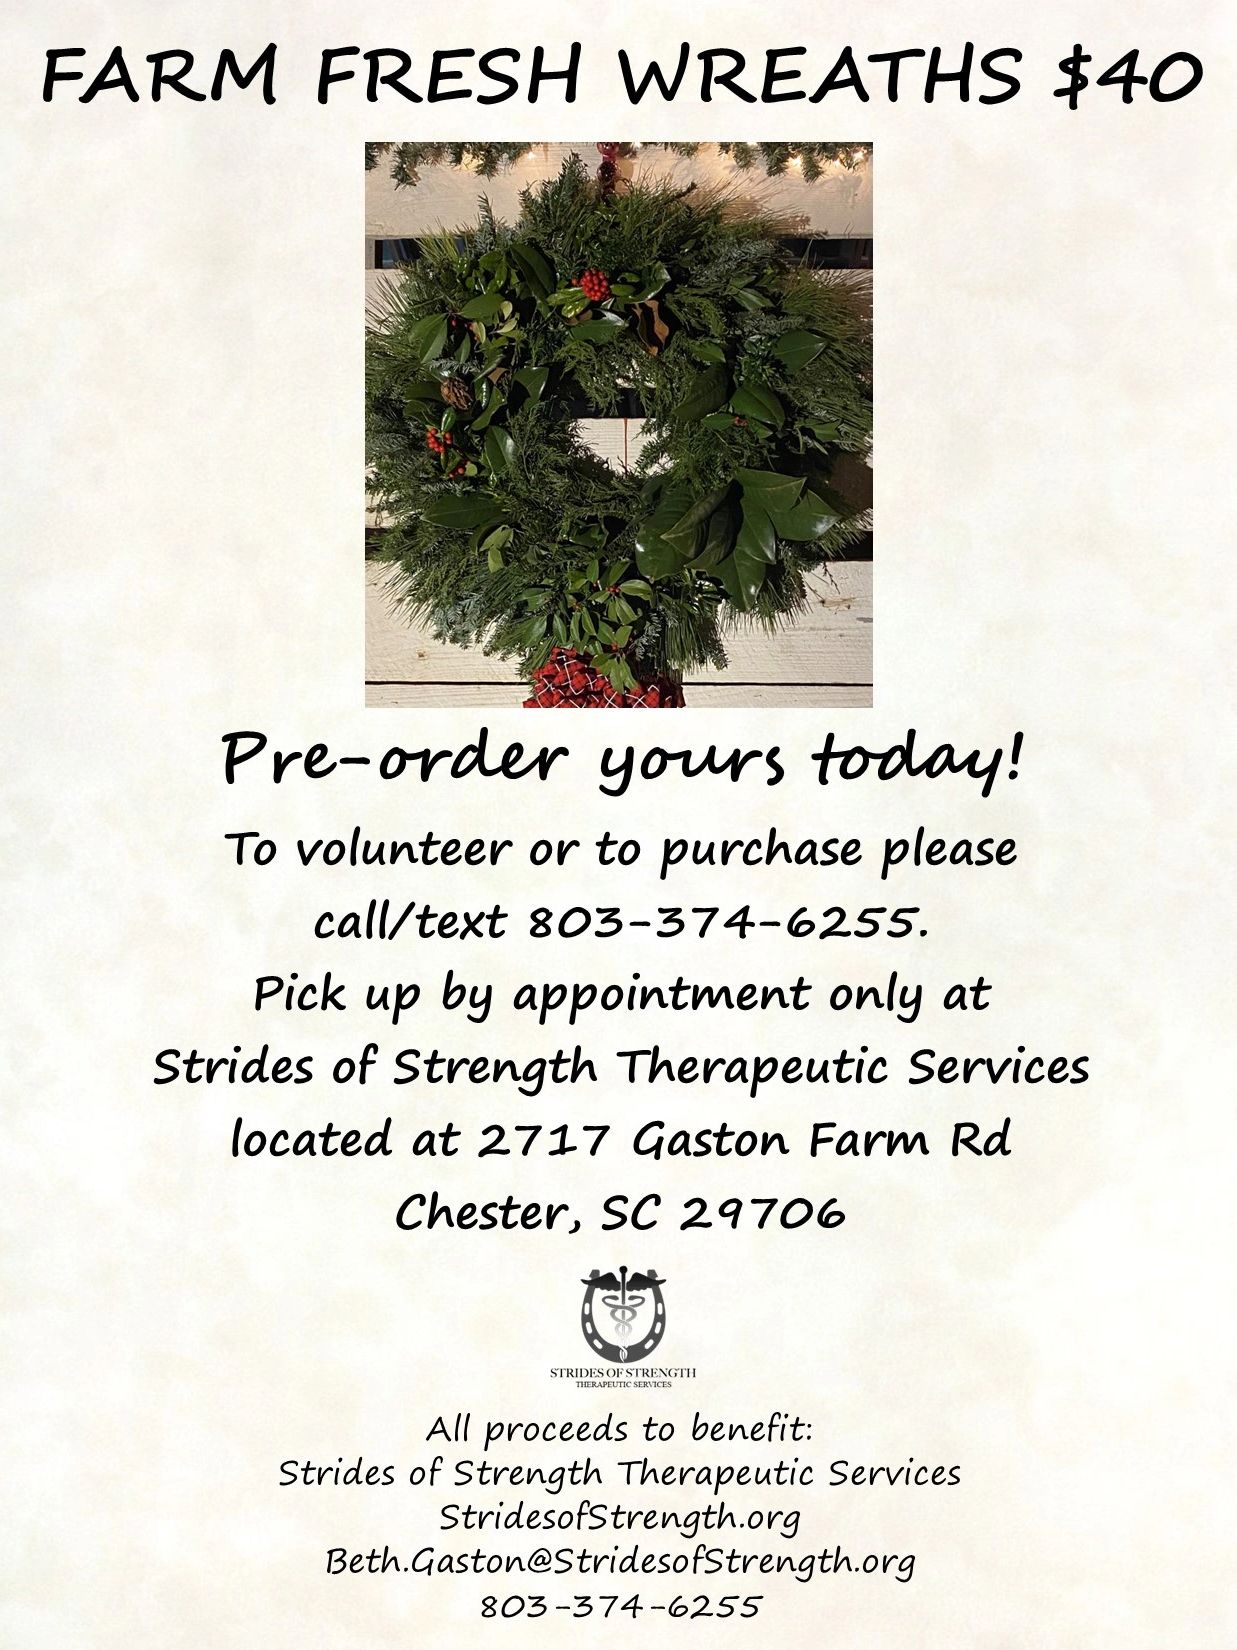 a poster for farm fresh wreaths